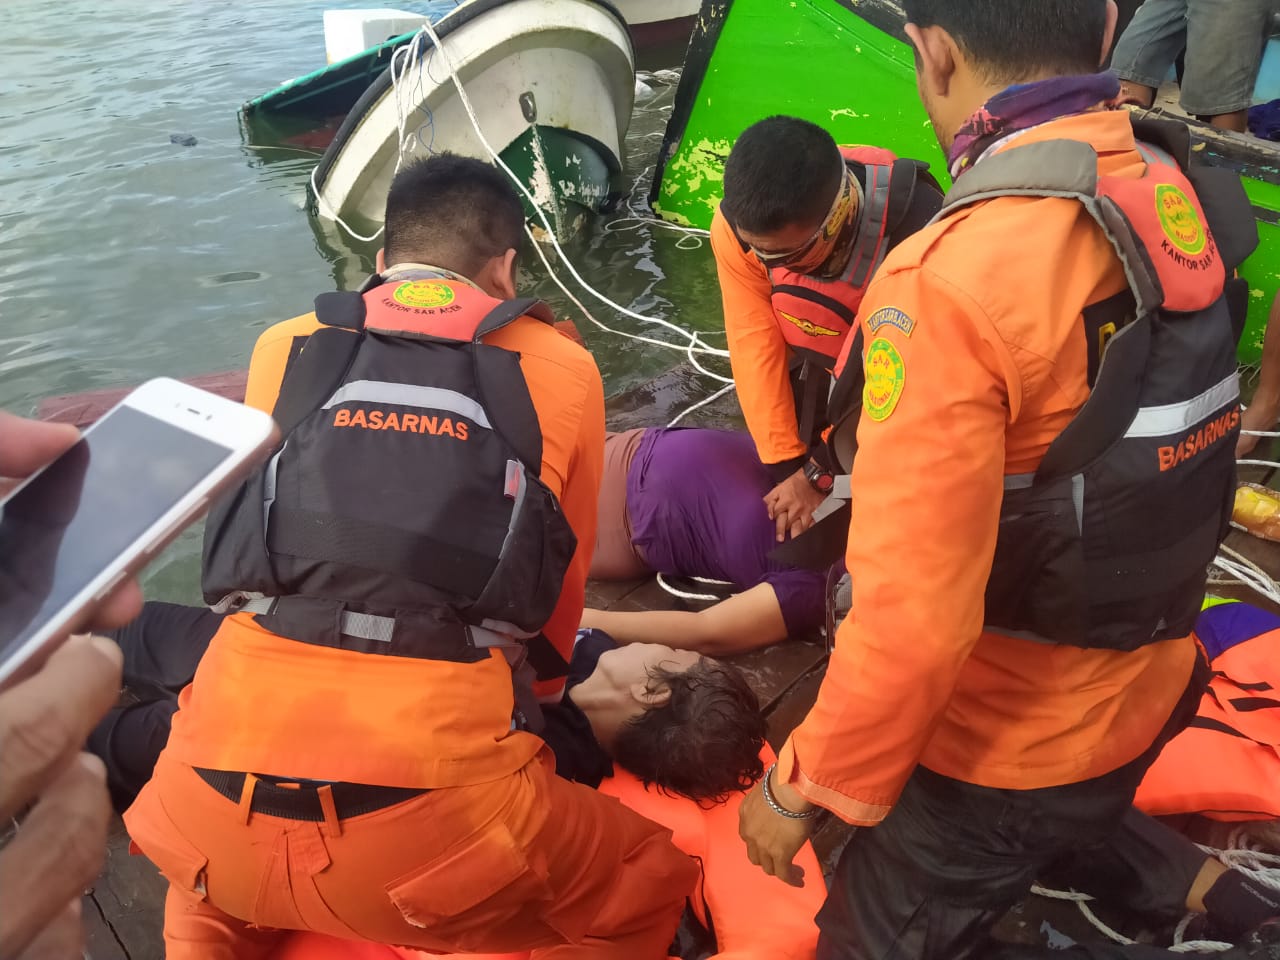 Boat Rombongan Tionghoa Tenggelam, Dua Orang meninggal Dunia